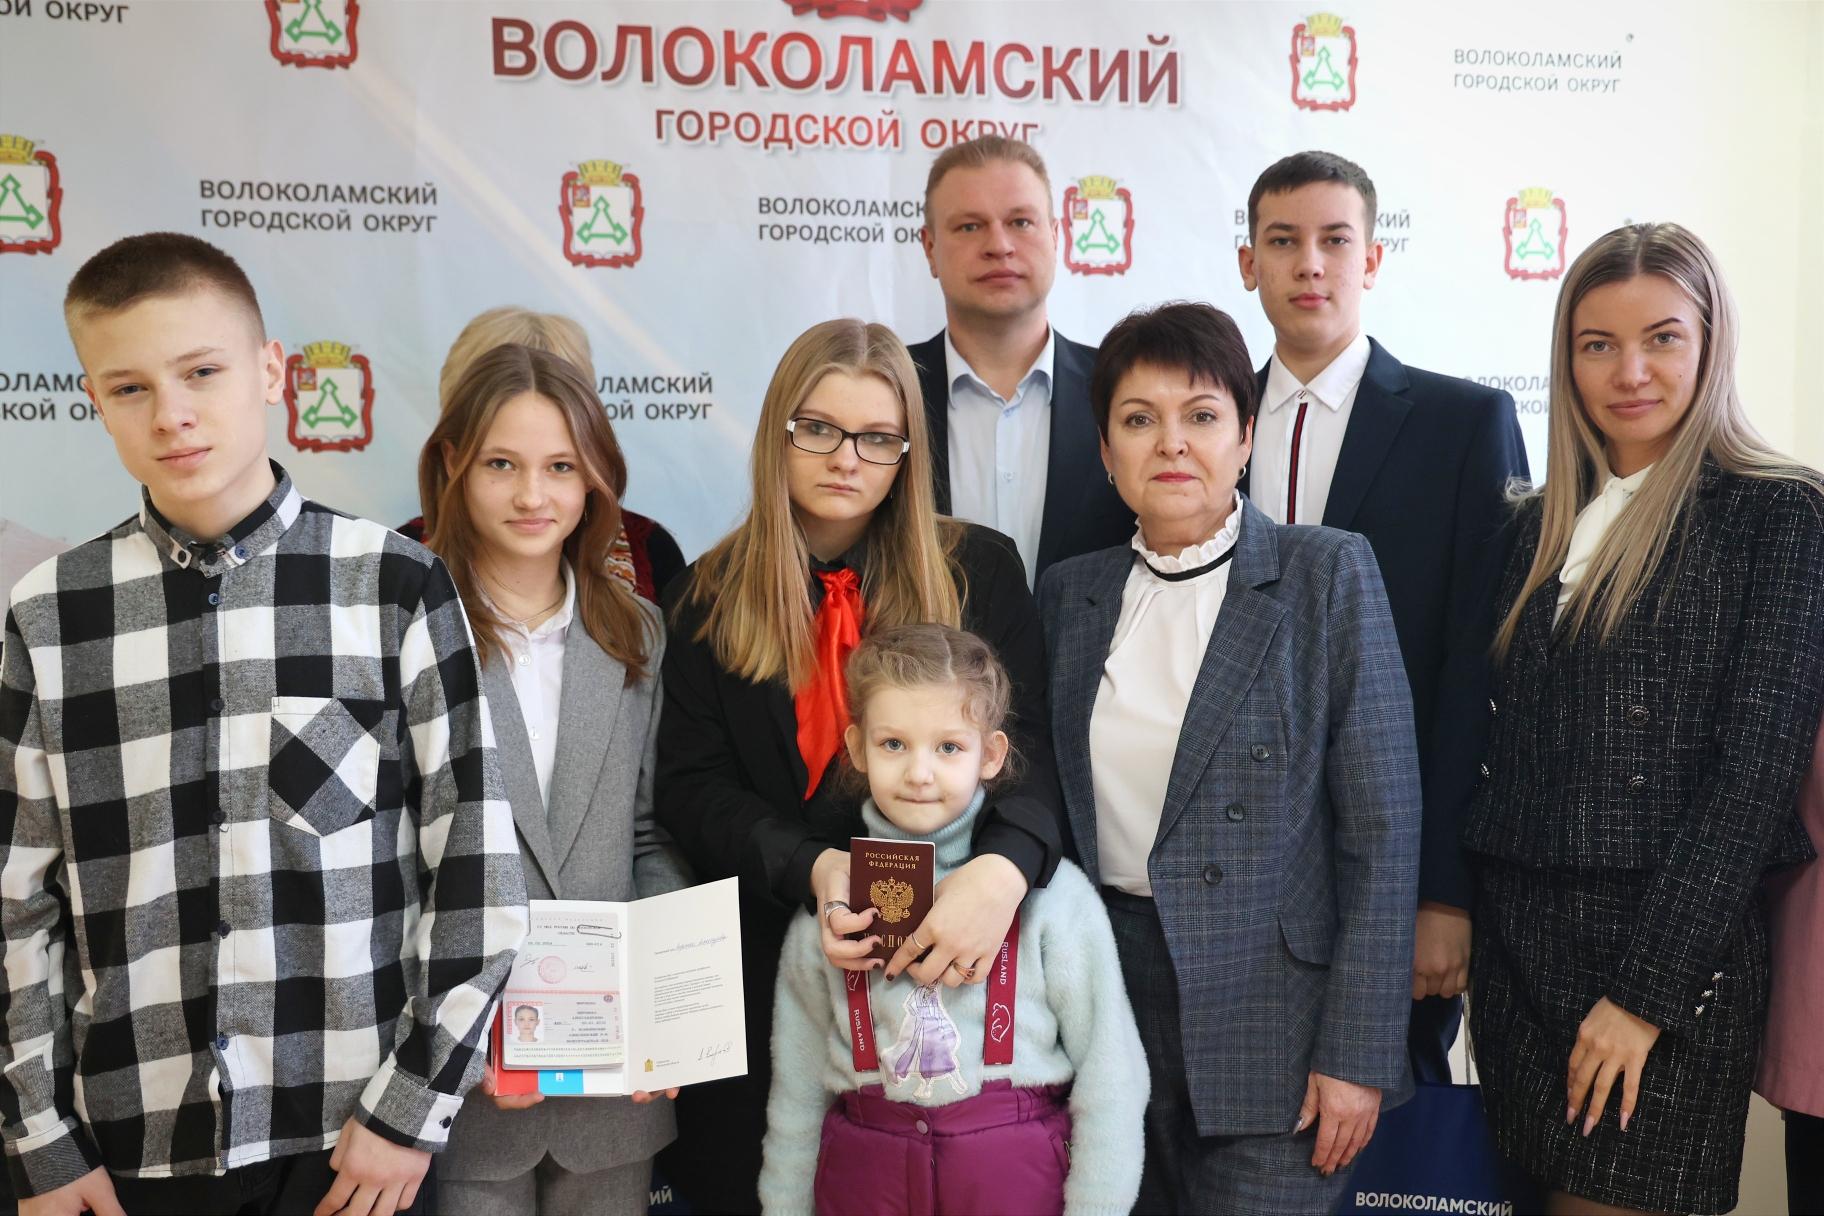 Юные жители Волоколамска в торжественной обстановке получили свой первый паспорт